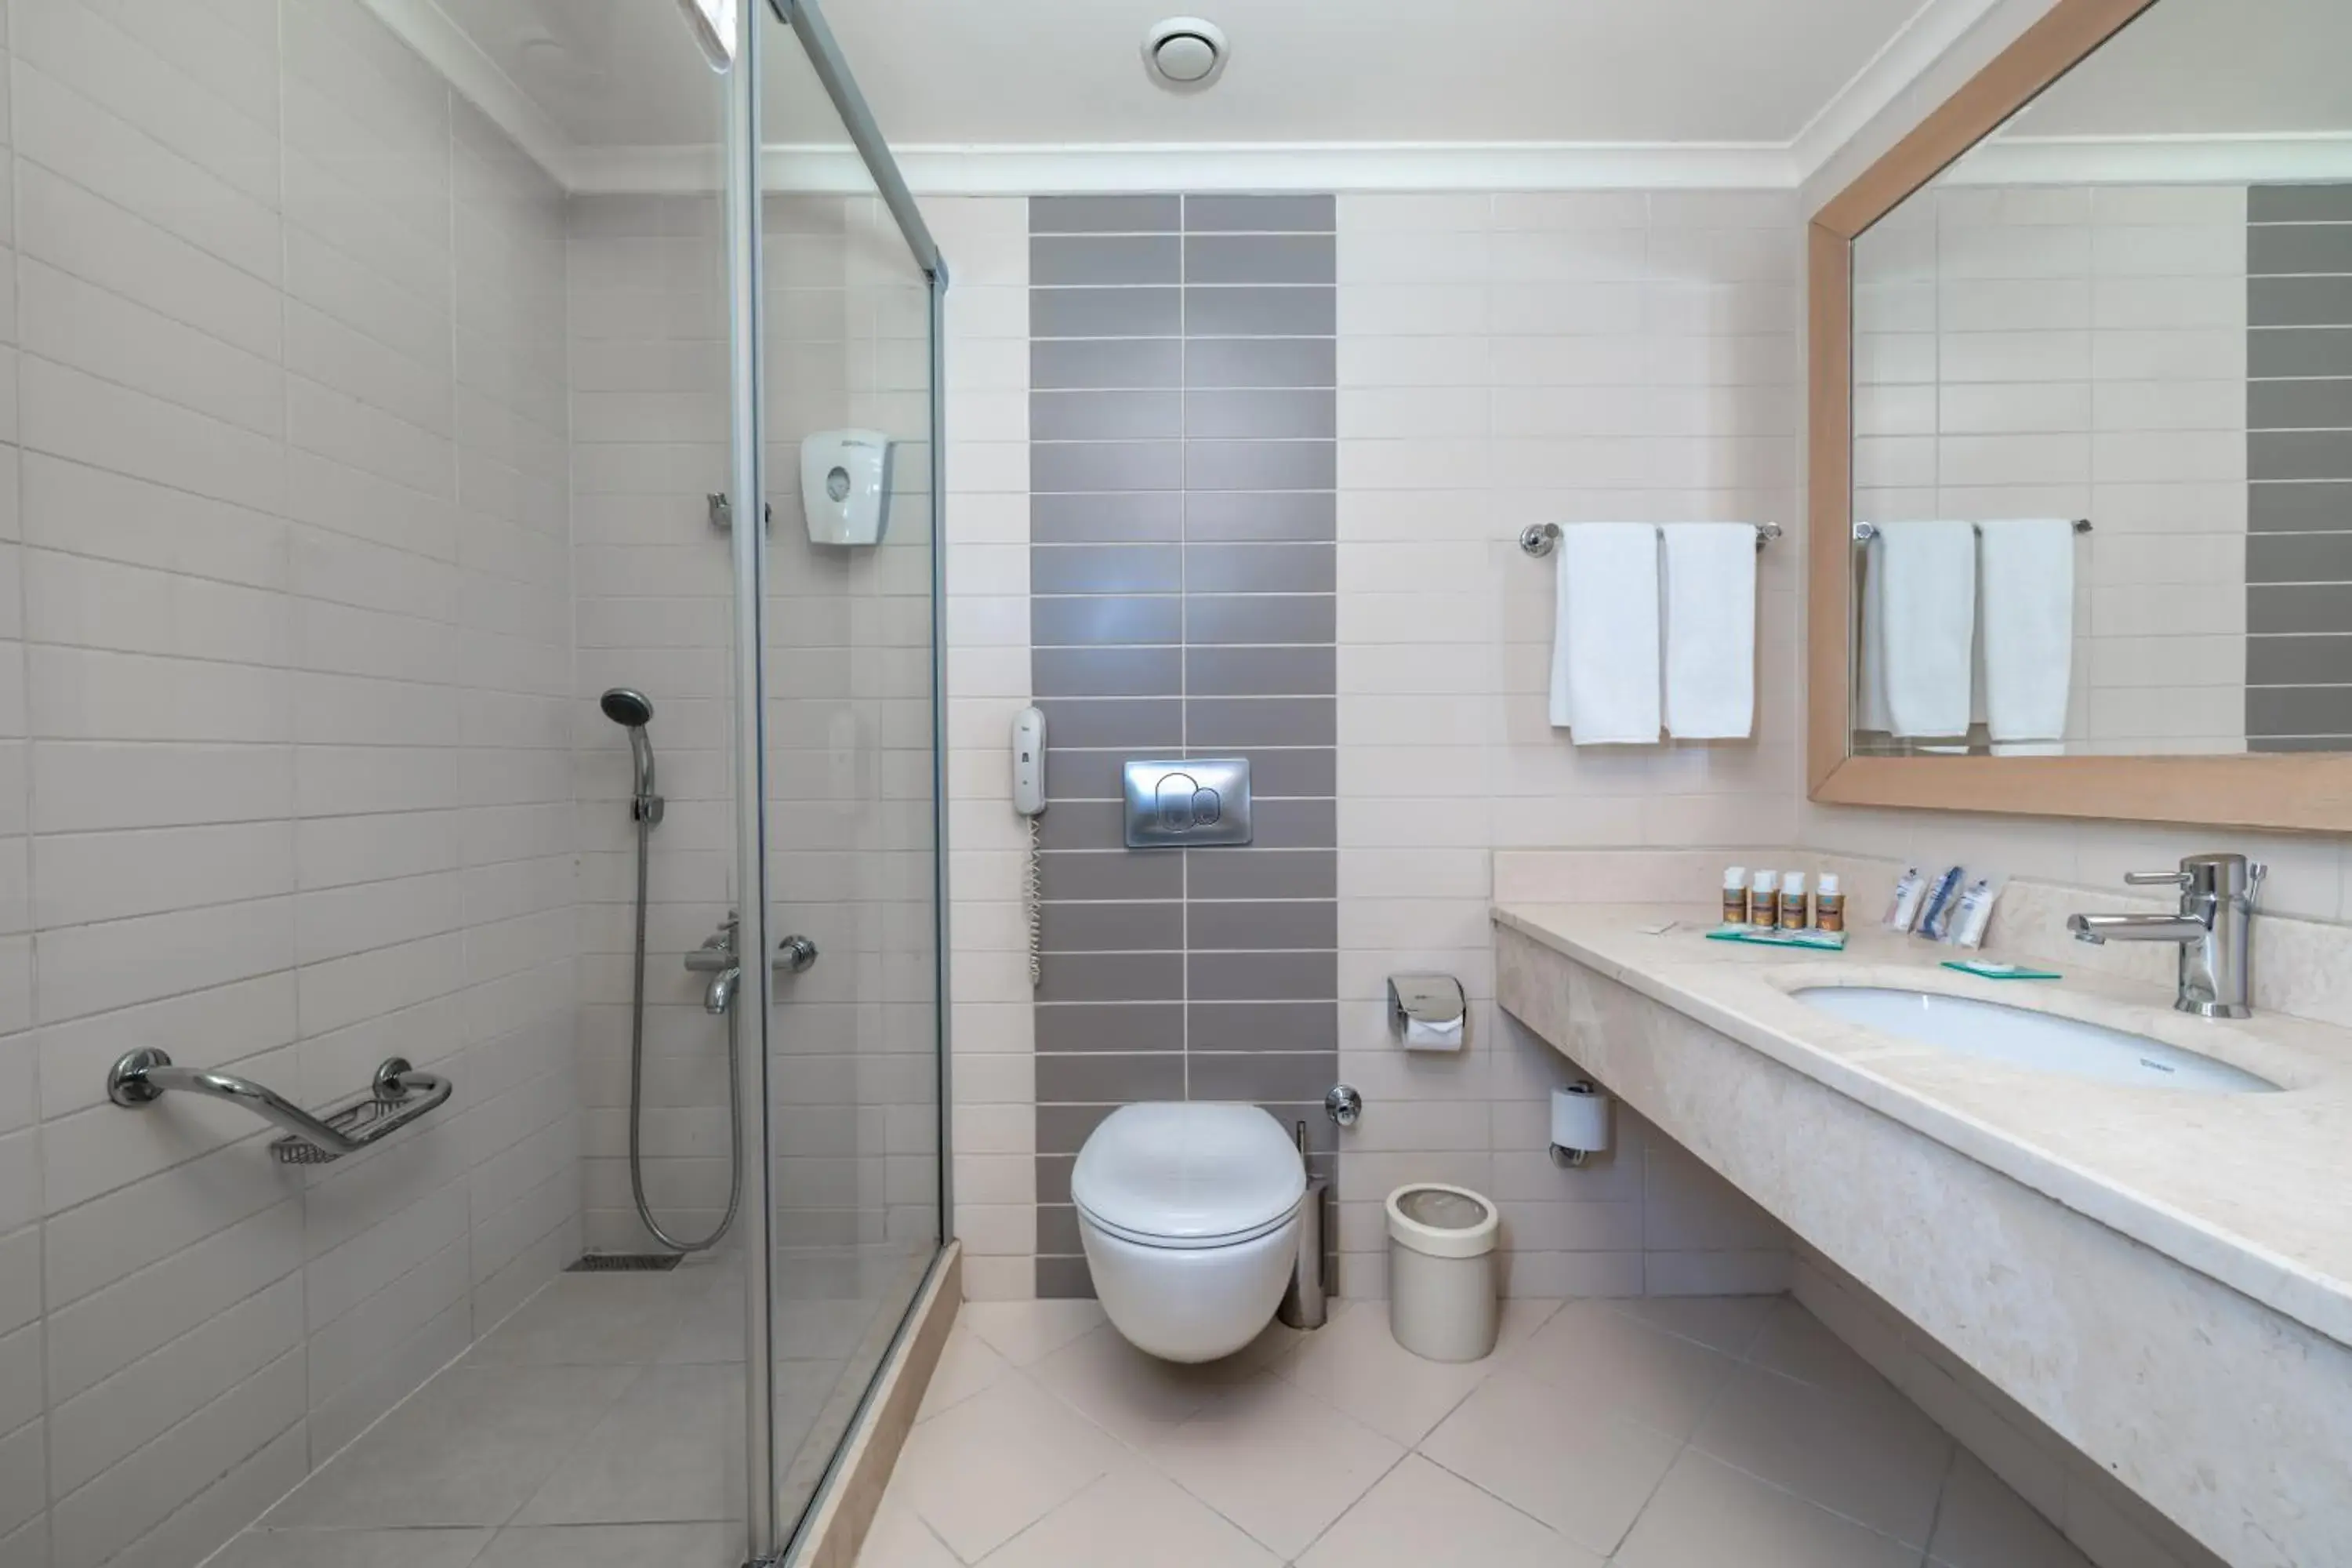 Property building, Bathroom in Crystal De Luxe Resort & Spa - All Inclusive